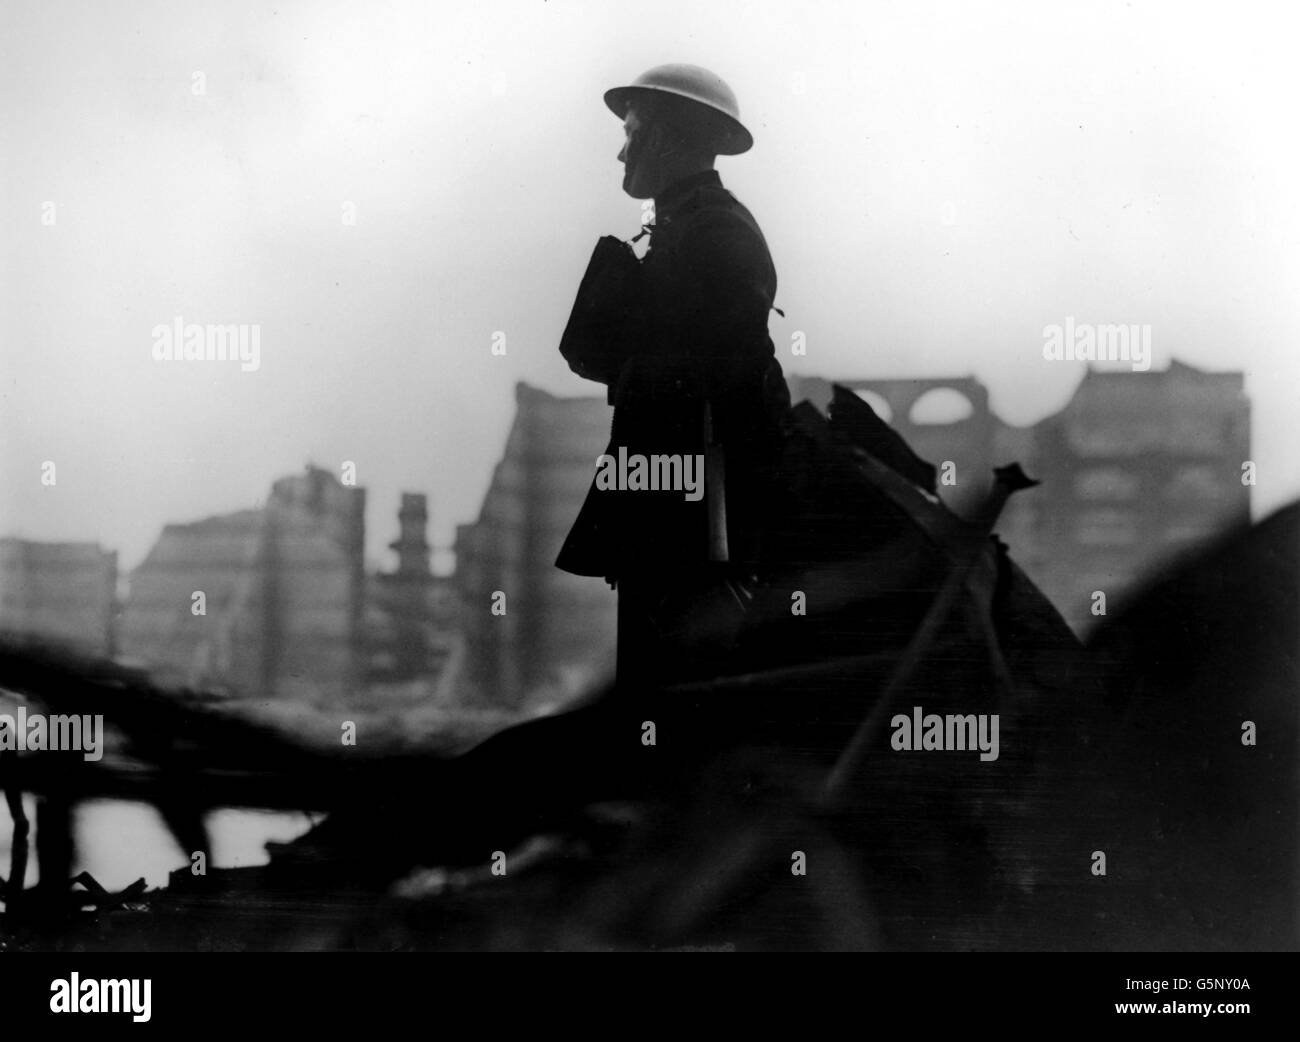 Un pompier londonien contemple les ravages causés par les bombardements de la Luftwaffe dans la région des docklands de l'est de Londres. L'entreposage détruit peut être vu en arrière-plan. Banque D'Images